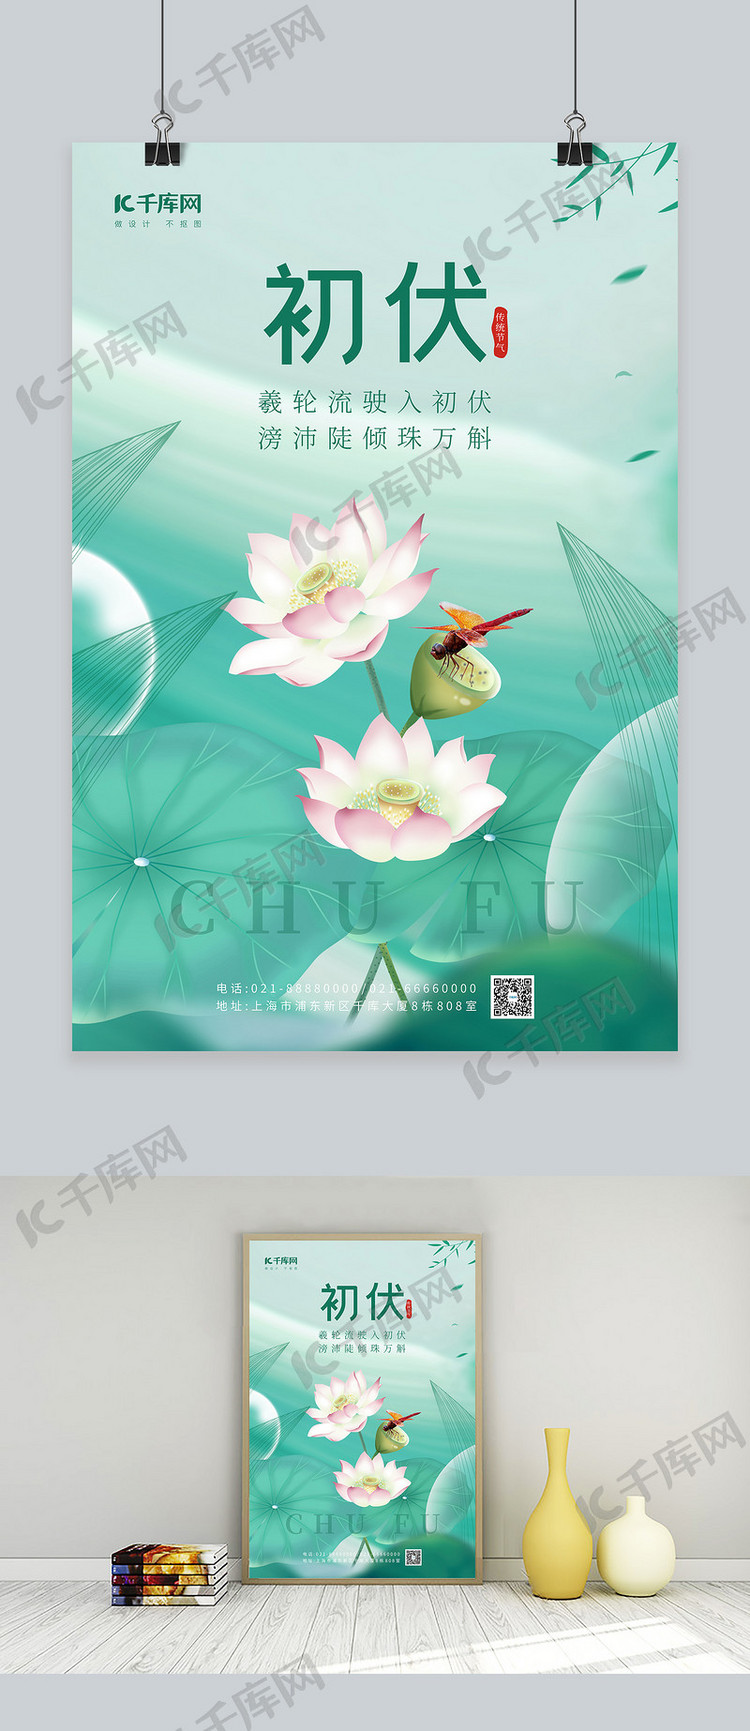 夏季初伏入伏三伏荷花蜻蜓蓝色中国风唯美海报